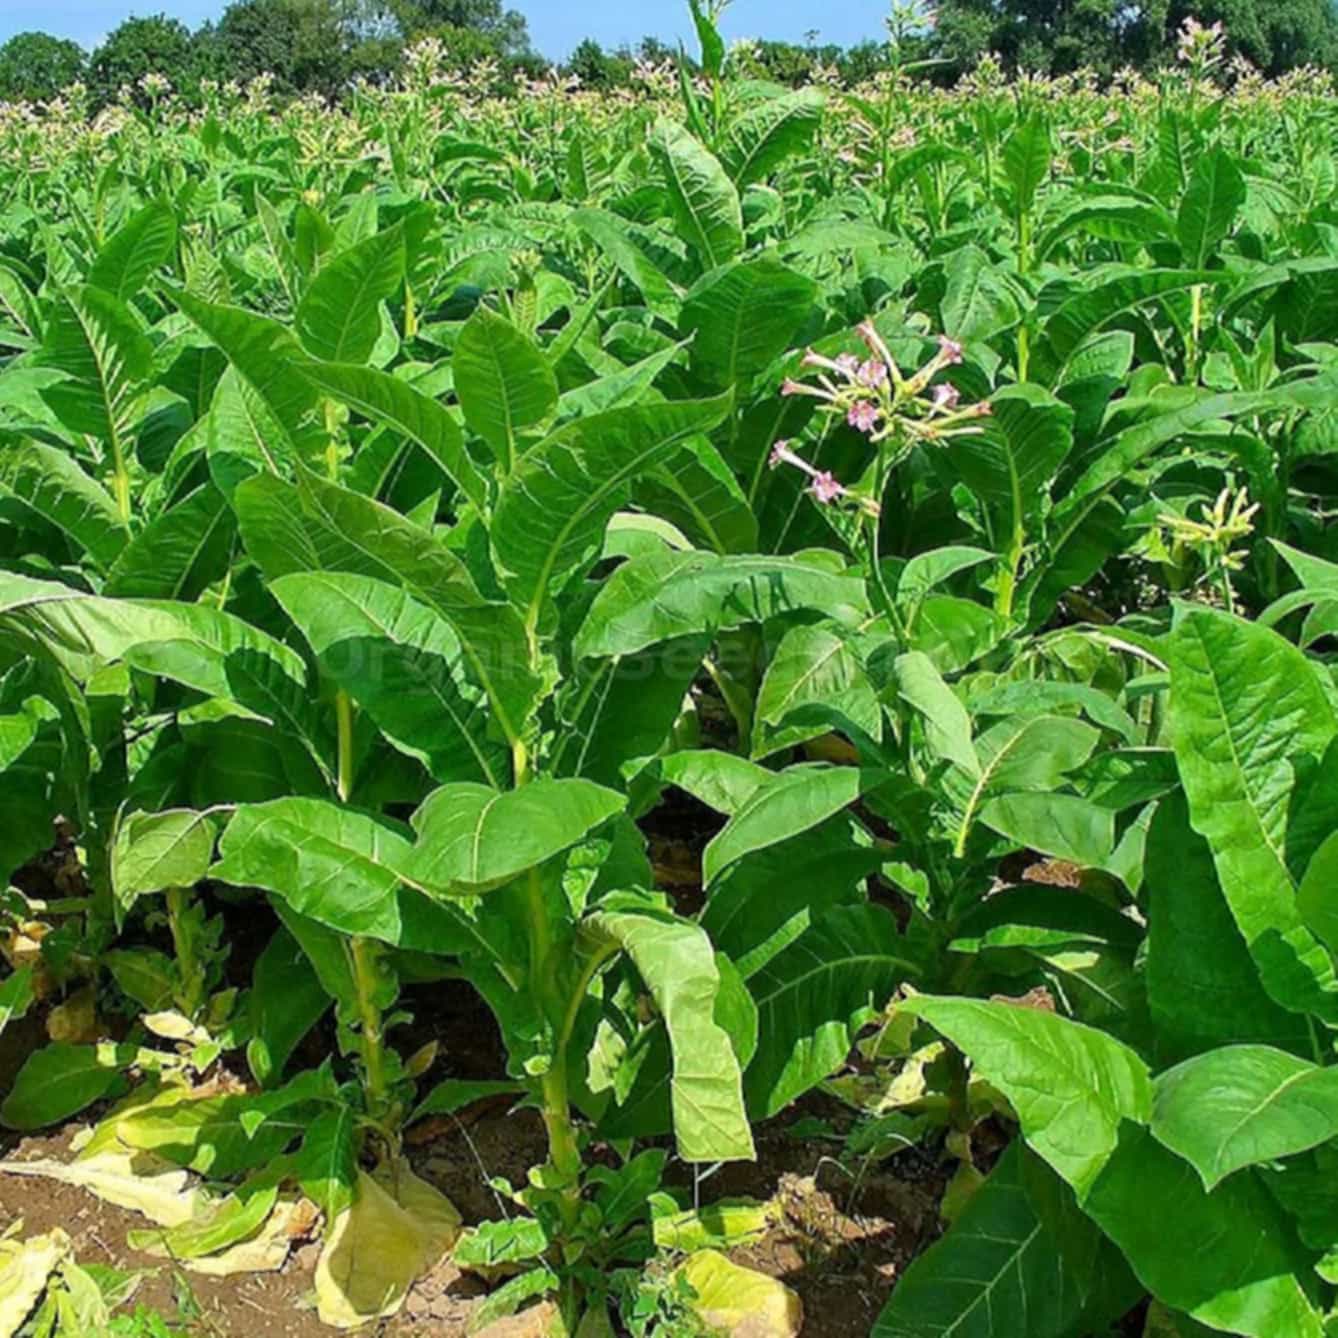 The genesis of tobacco seedlings in Uganda's embrace